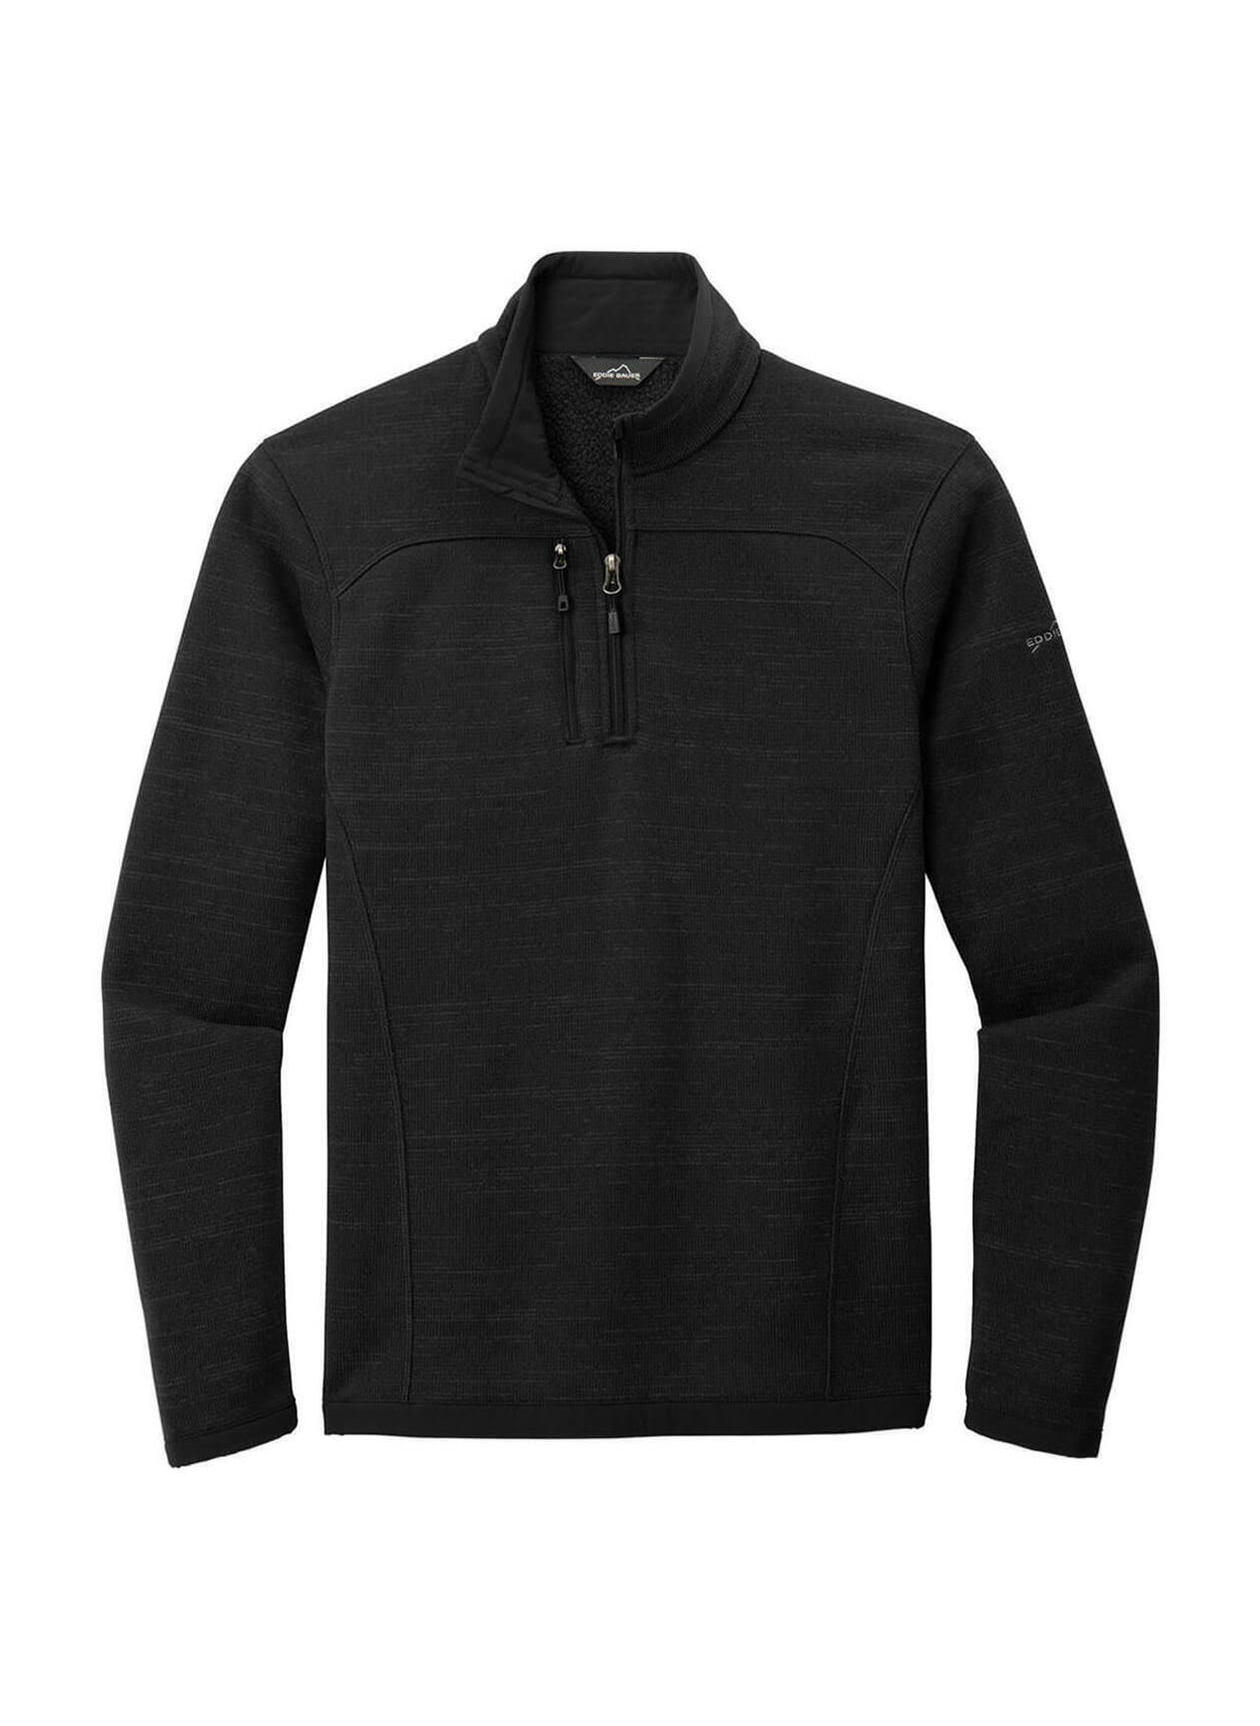 Corporate Eddie Bauer Men's Black Fleece-Lined Jacket